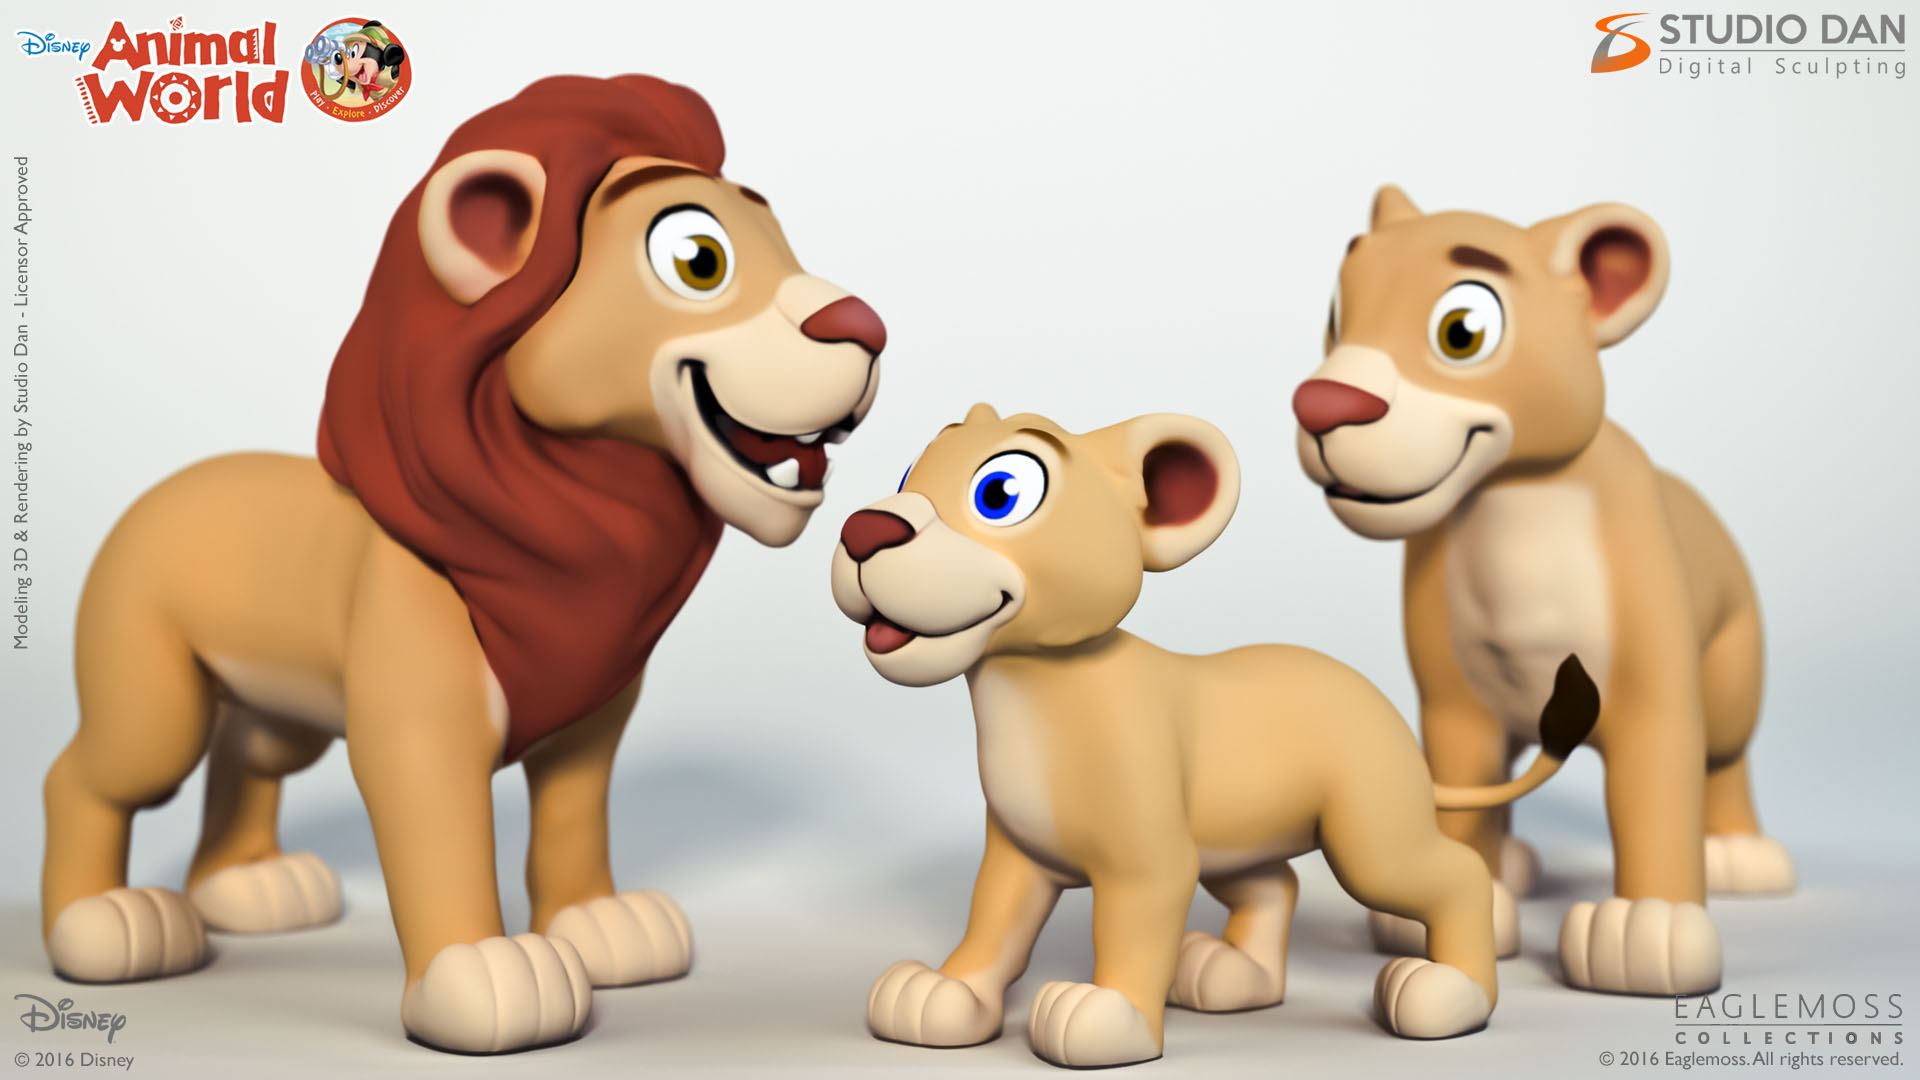 Disney Animal World – Studio Dan Digital Sculpting